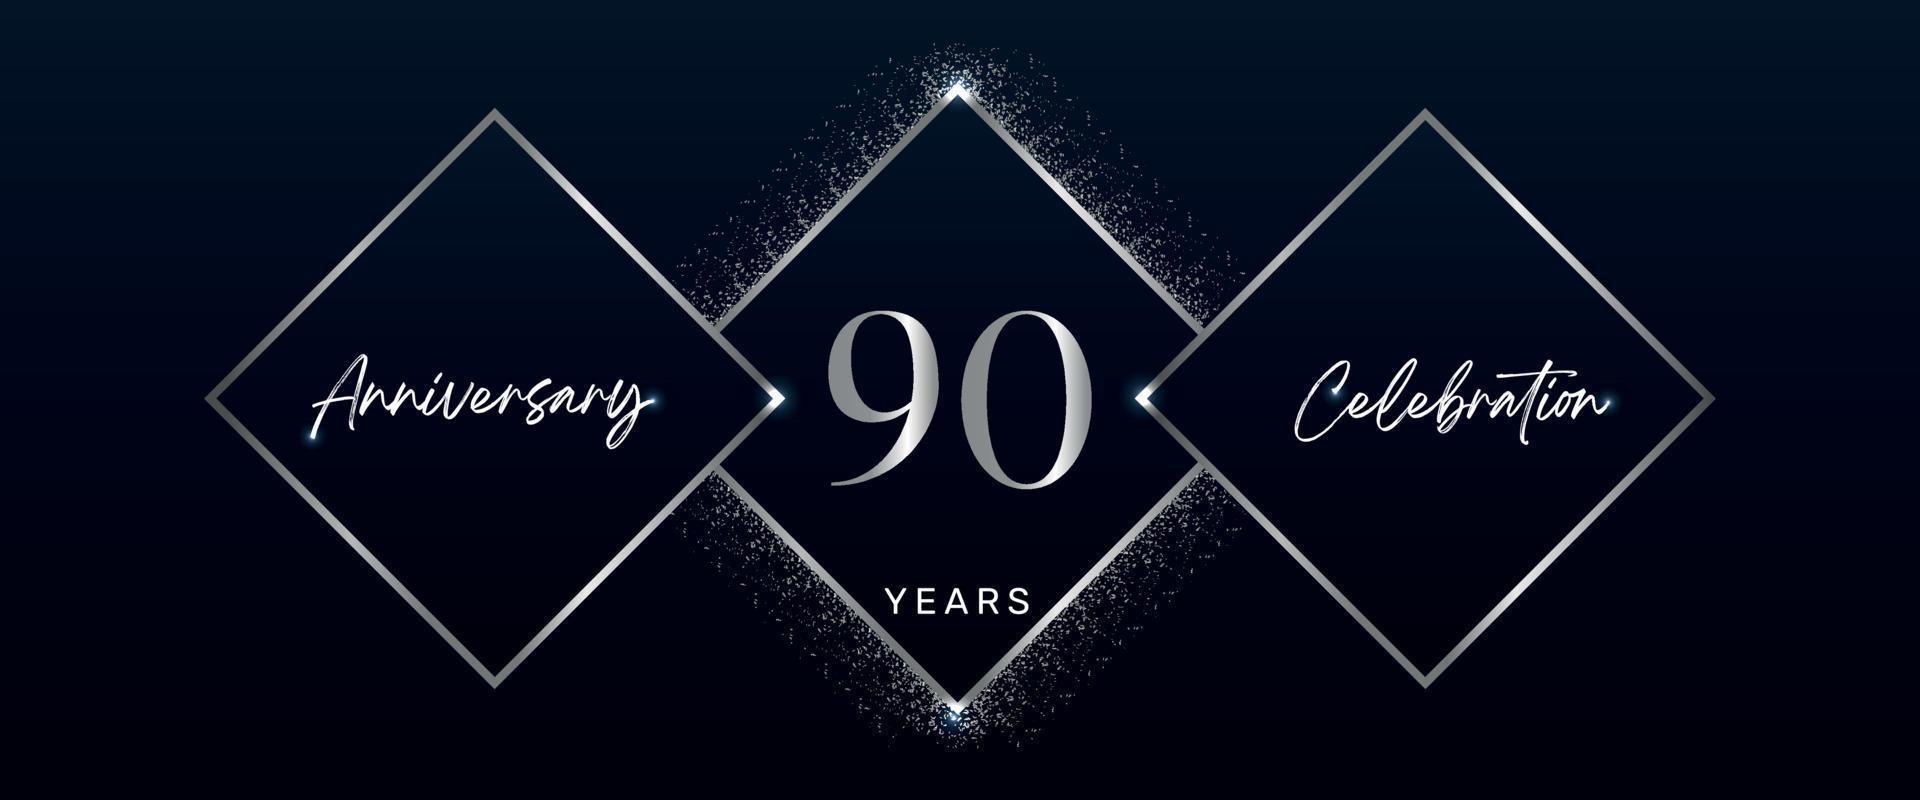 Logotyp zum 90-jährigen Jubiläum. vektordesign für jubiläumsfeierveranstaltungen, geburtstagsfeier, grußkarte, hochzeit, einladungskarte. Designvektor zum 90-jährigen Jubiläum vektor